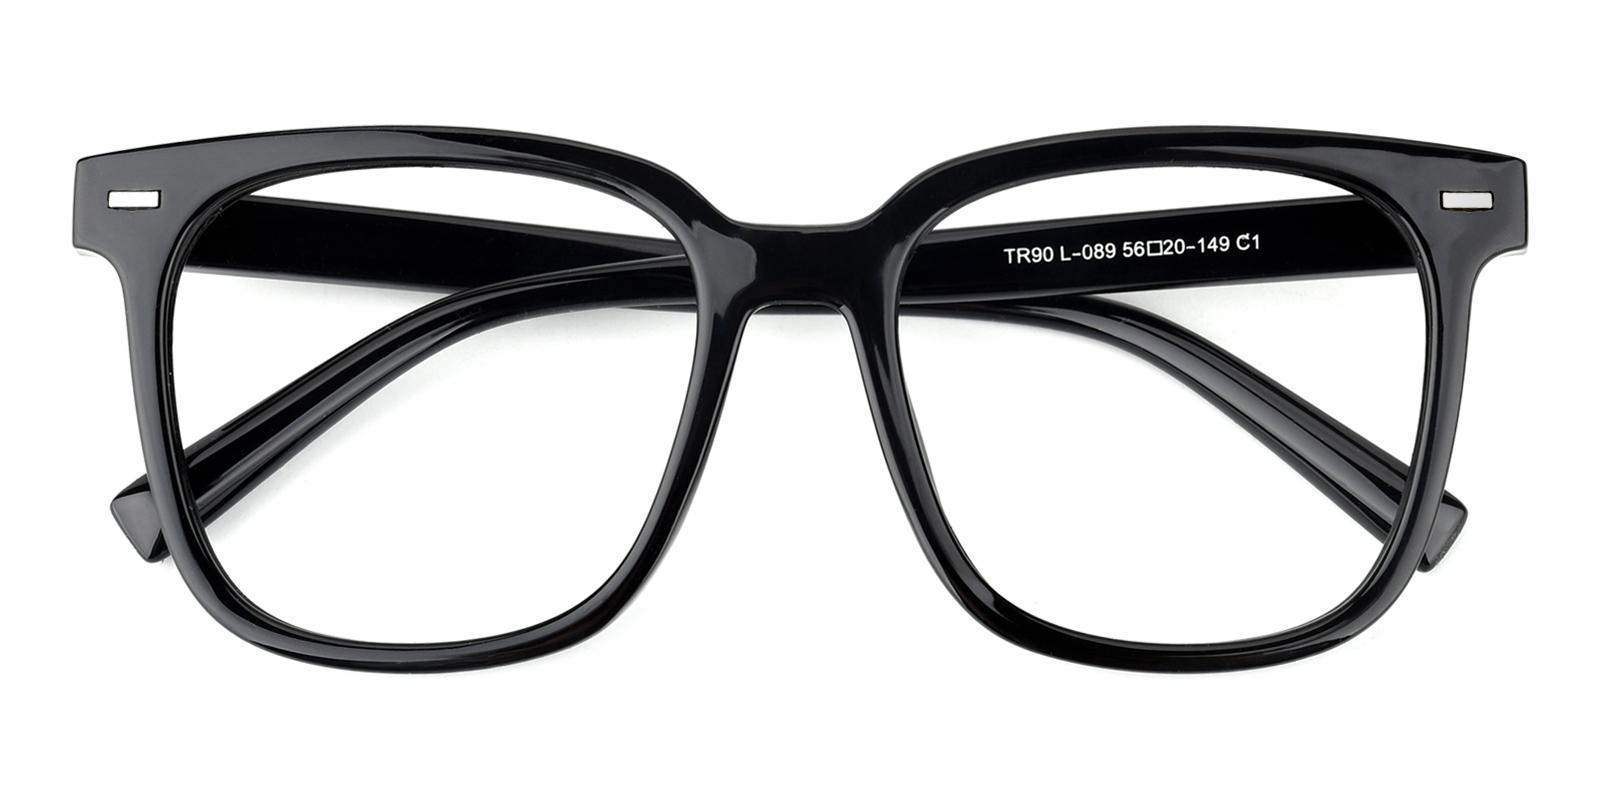 Lennox-Black-Square-TR-Eyeglasses-detail